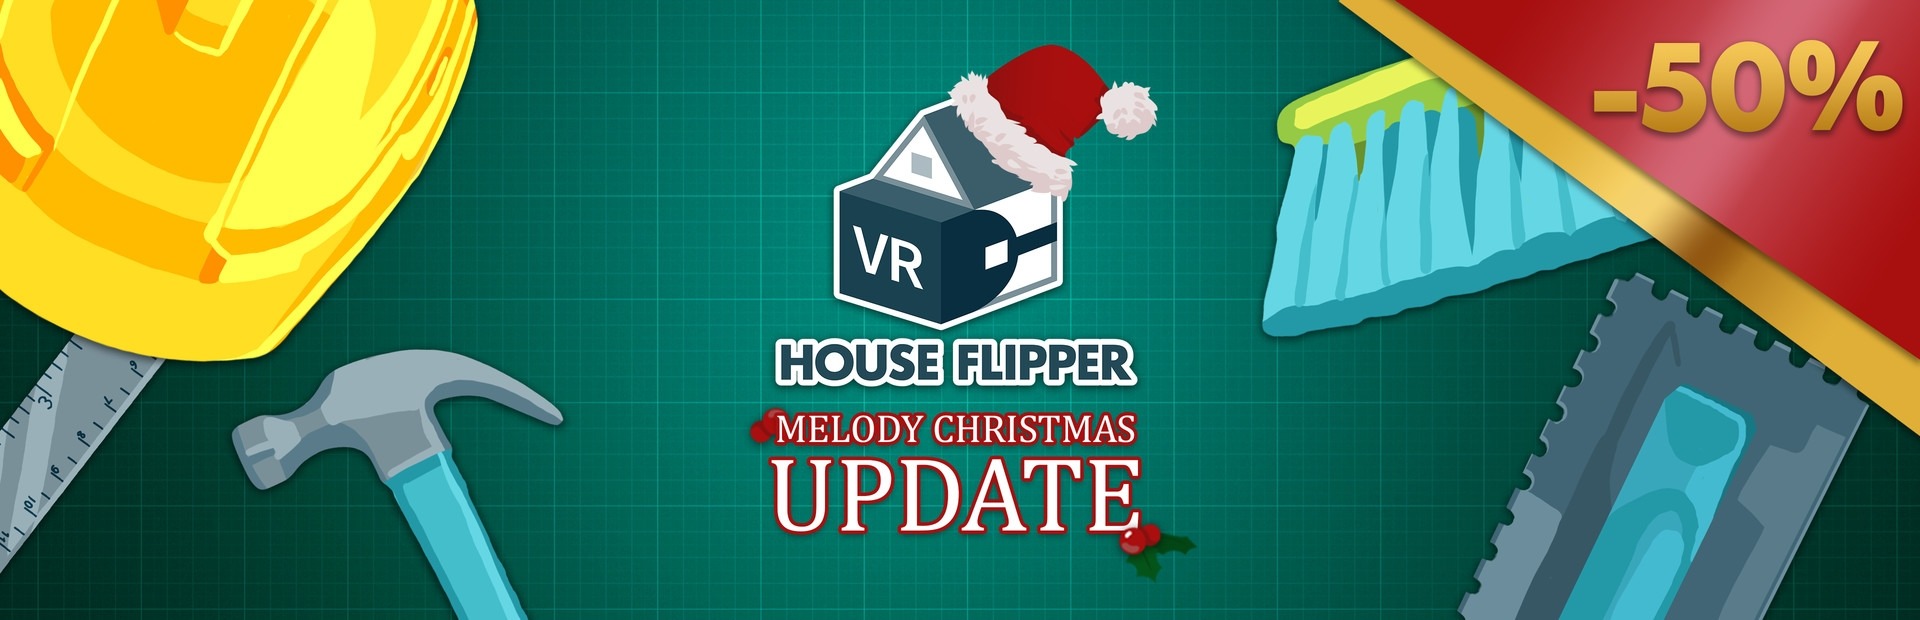 Banner House Flipper VR